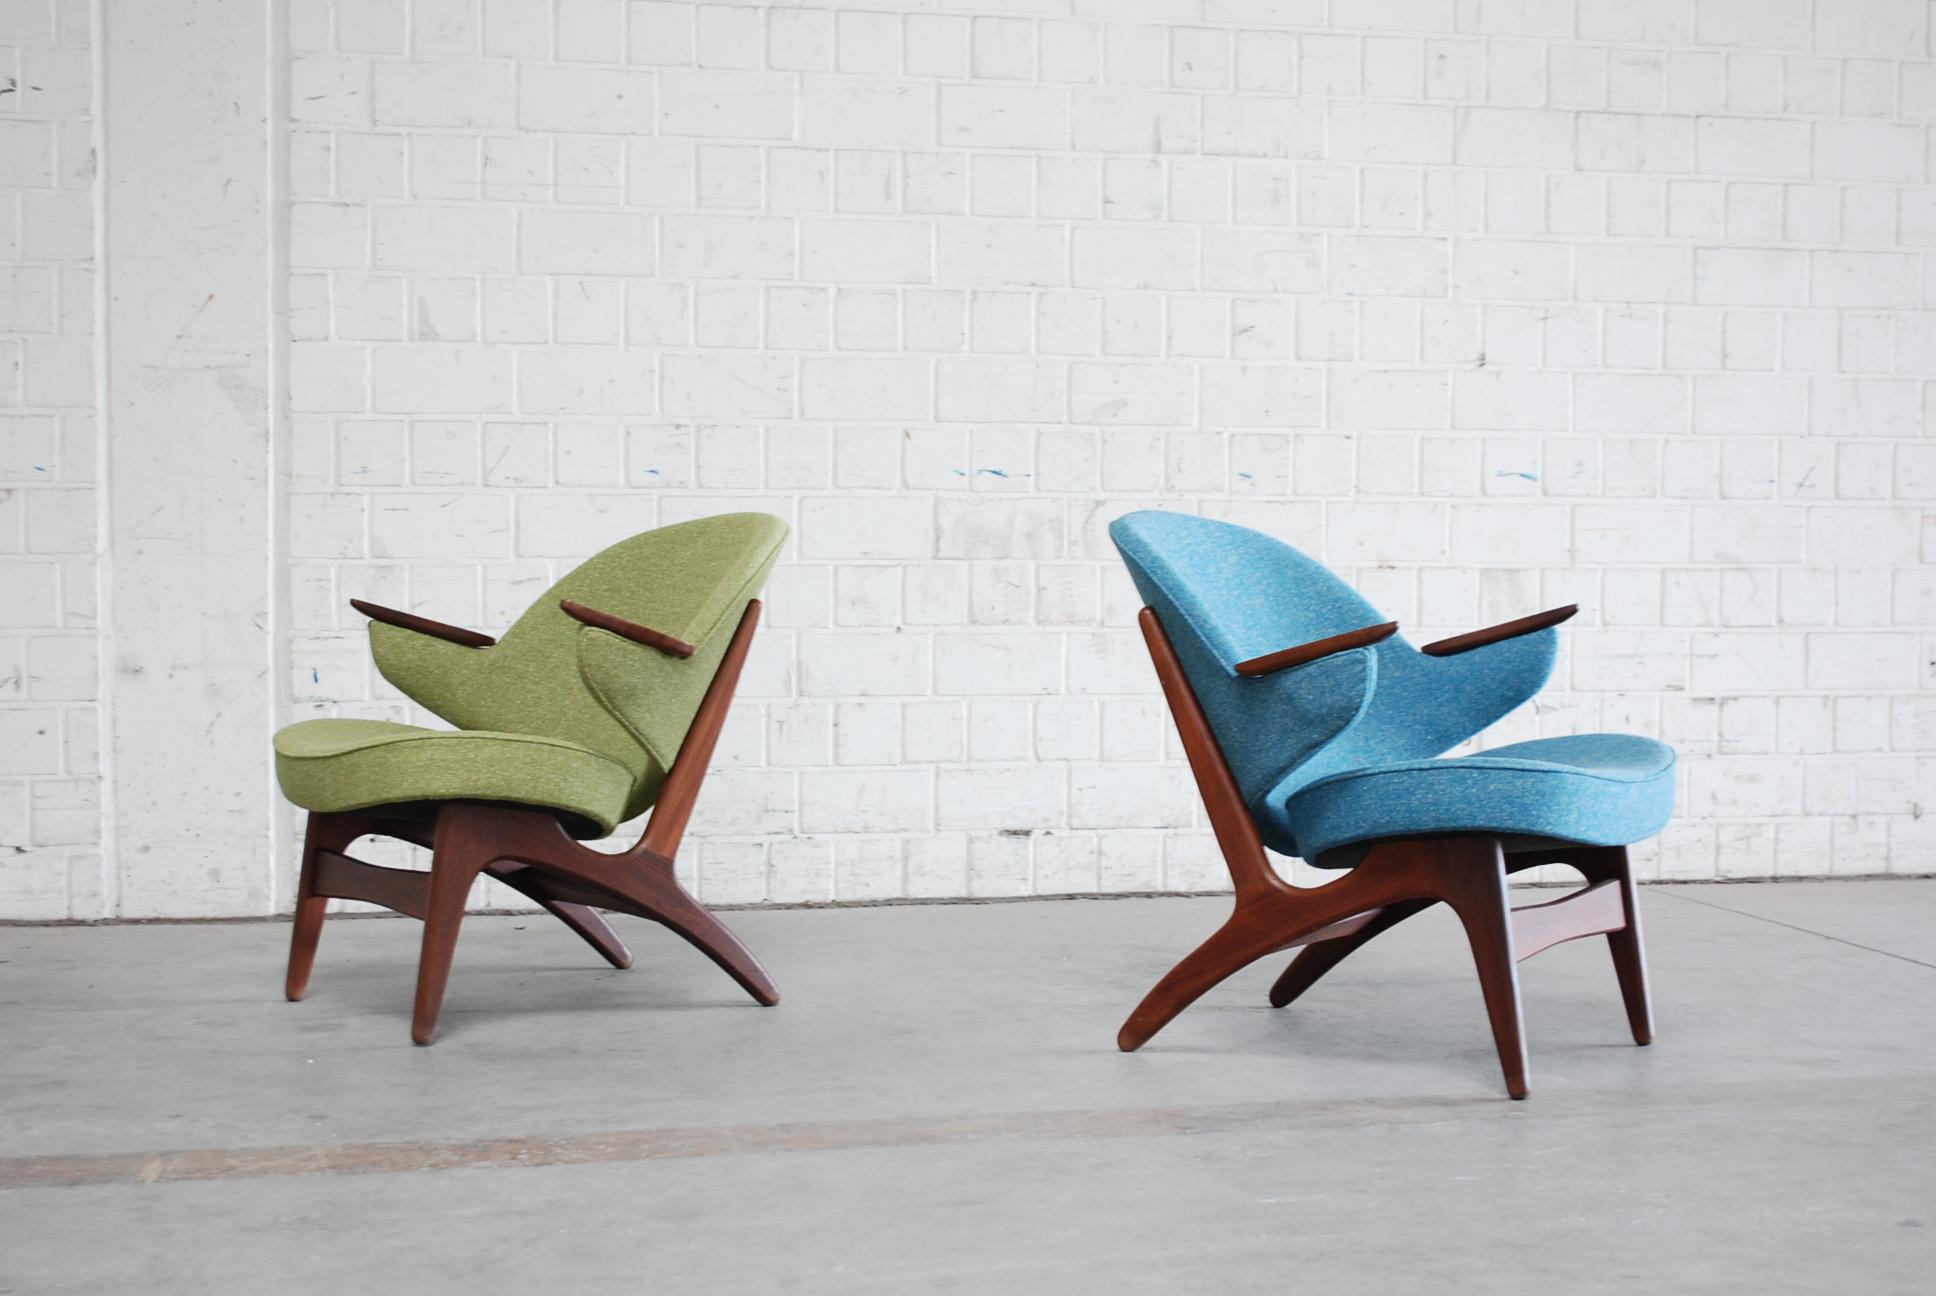 Ein Paar Sessel in Petrol und Grün aus Teakholz.
Design Carl Edward Matthes.
Der Stuhl wurde komplett restauriert und gepolstert  in 2 verschiedenen Farben, die gut zueinander passen: Grün und Petrol.
Der Stoff ist aus einem hochwertigen Hanfgewebe